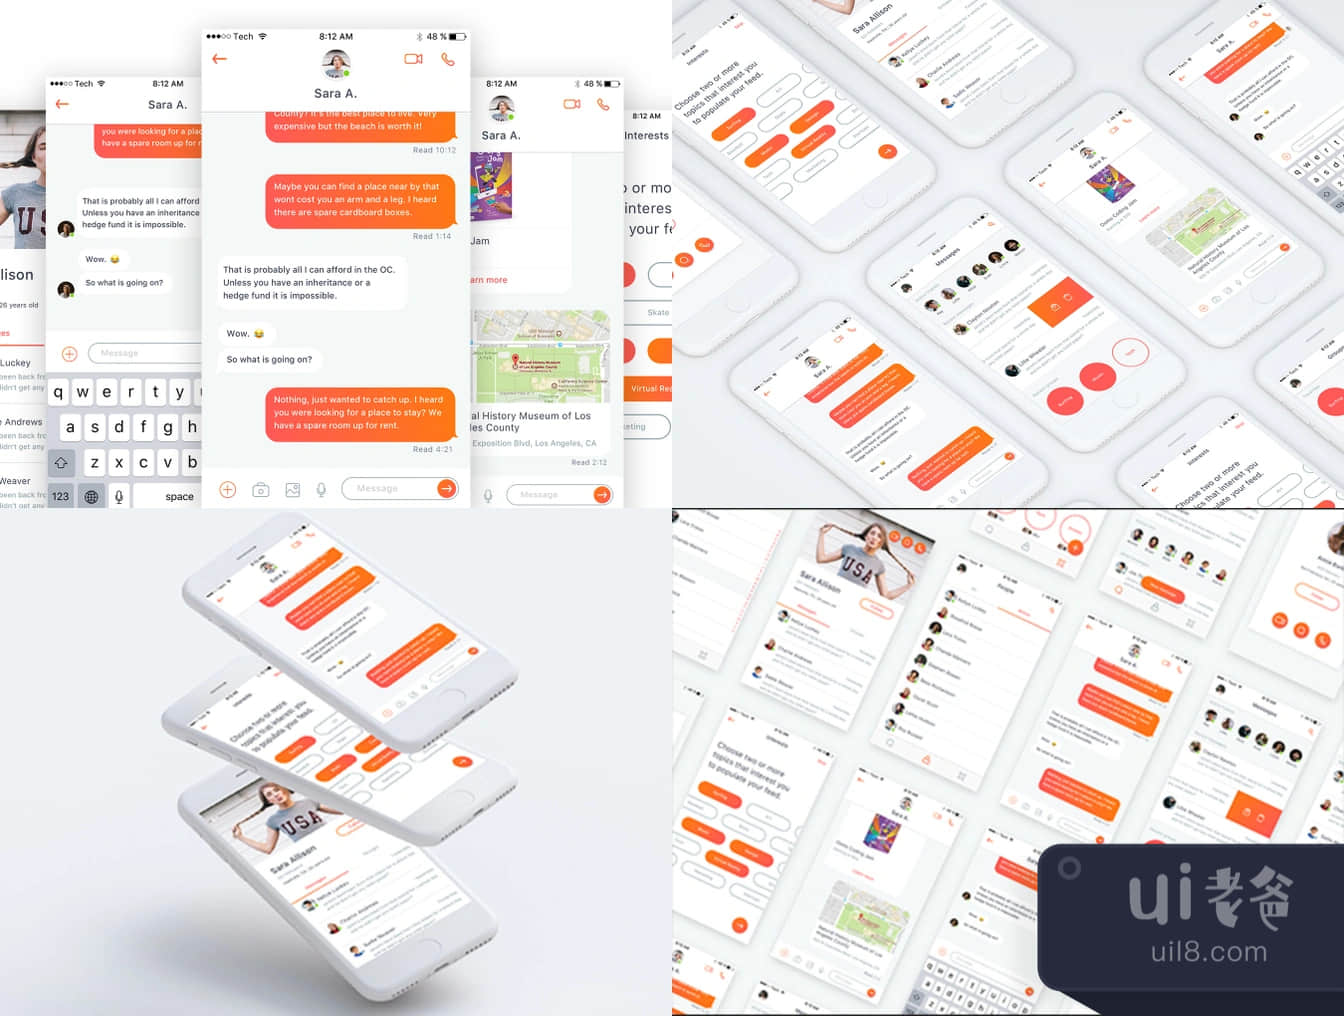 迷你聊天室iOS UI工具包 (Chat Mini iOS UI Kit)插图1